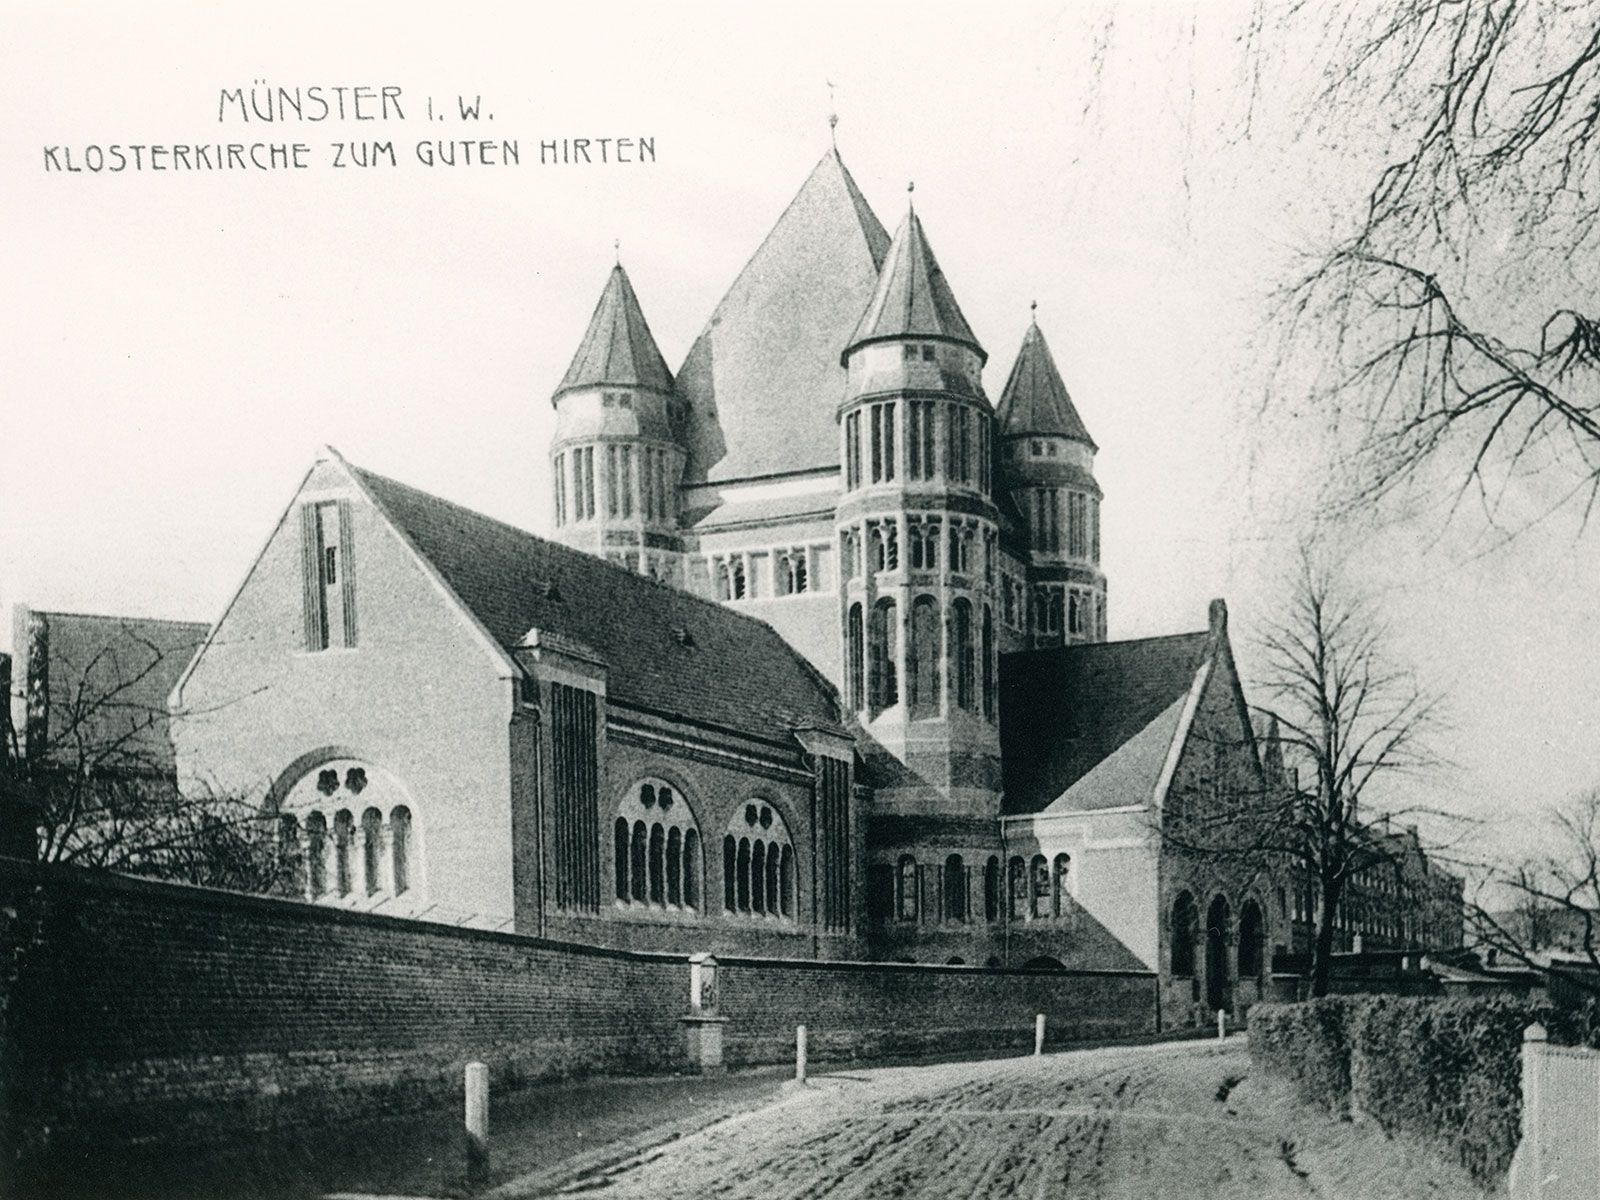 Postkarte der alten Klosterkirche